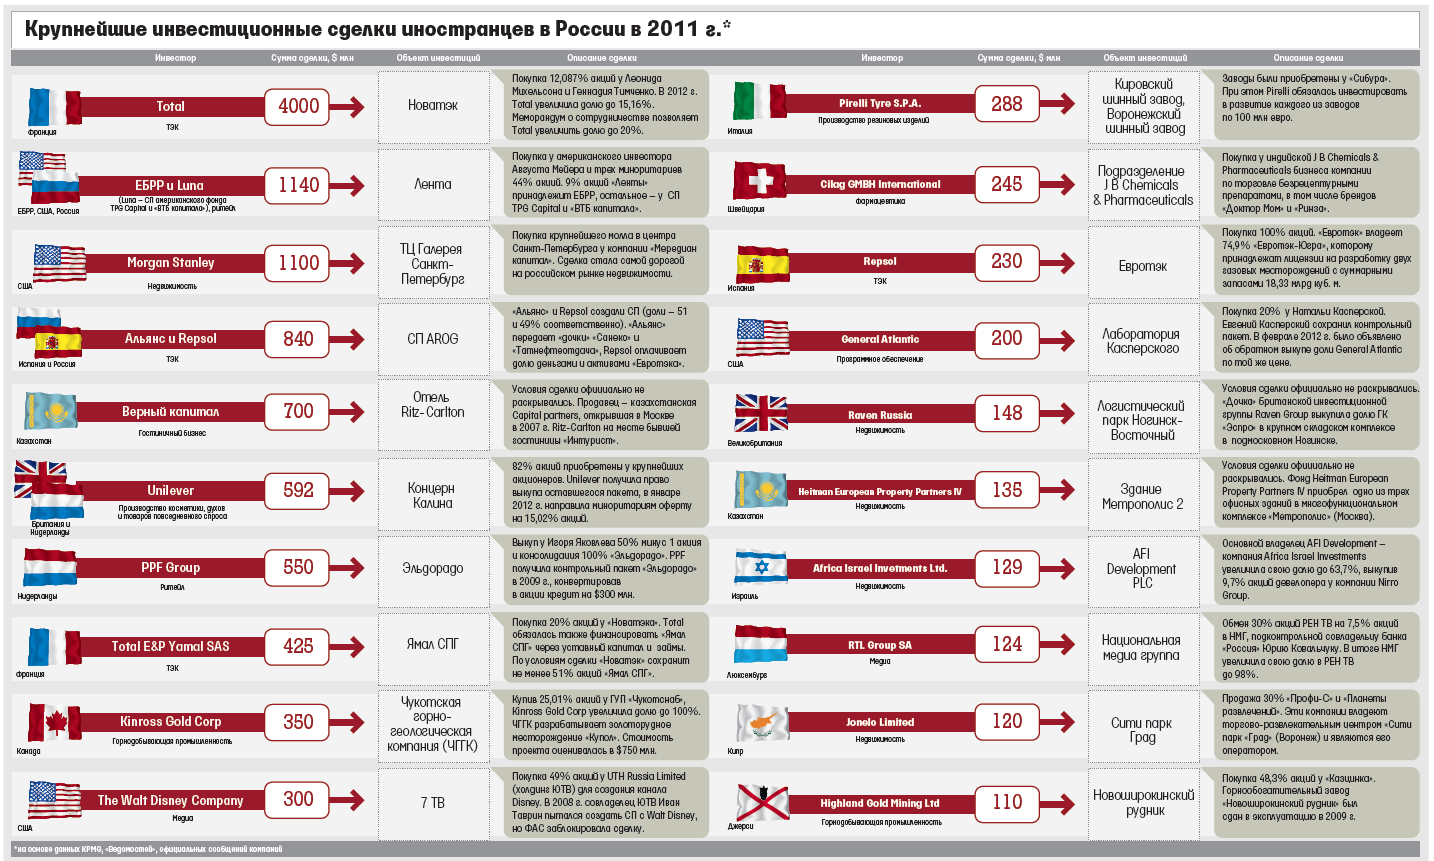 Крупнейшие инвестиционные сделки иностранцев в России 2011 года